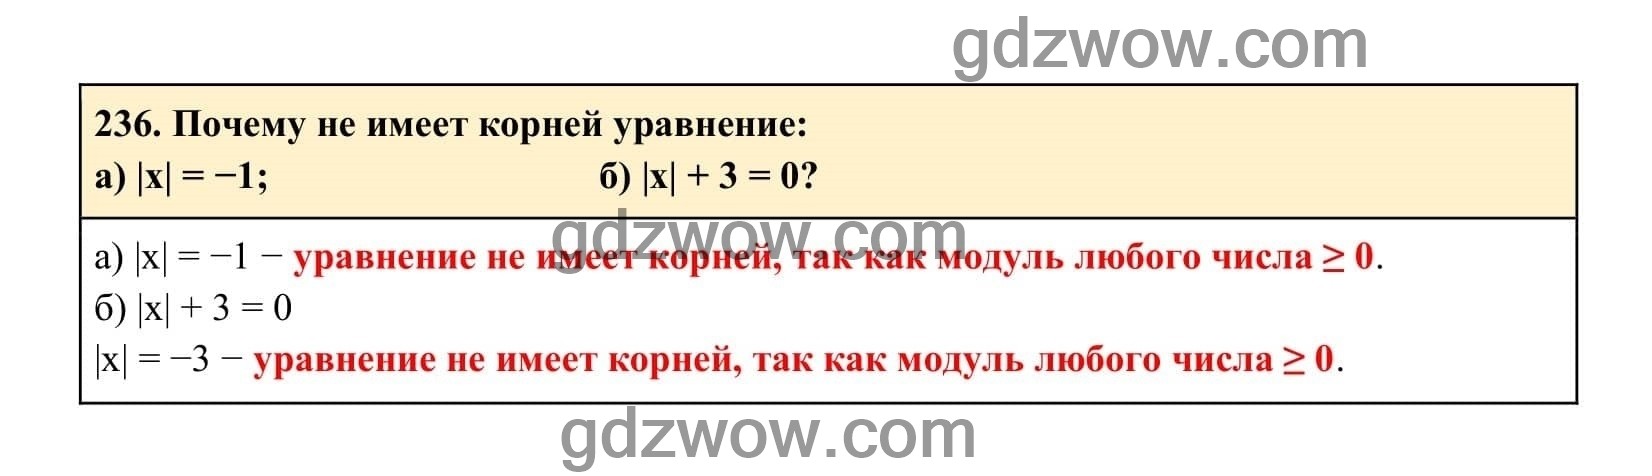 Упражнение 236 - ГДЗ по Алгебре 7 класс Учебник Макарычев (решебник) - GDZwow